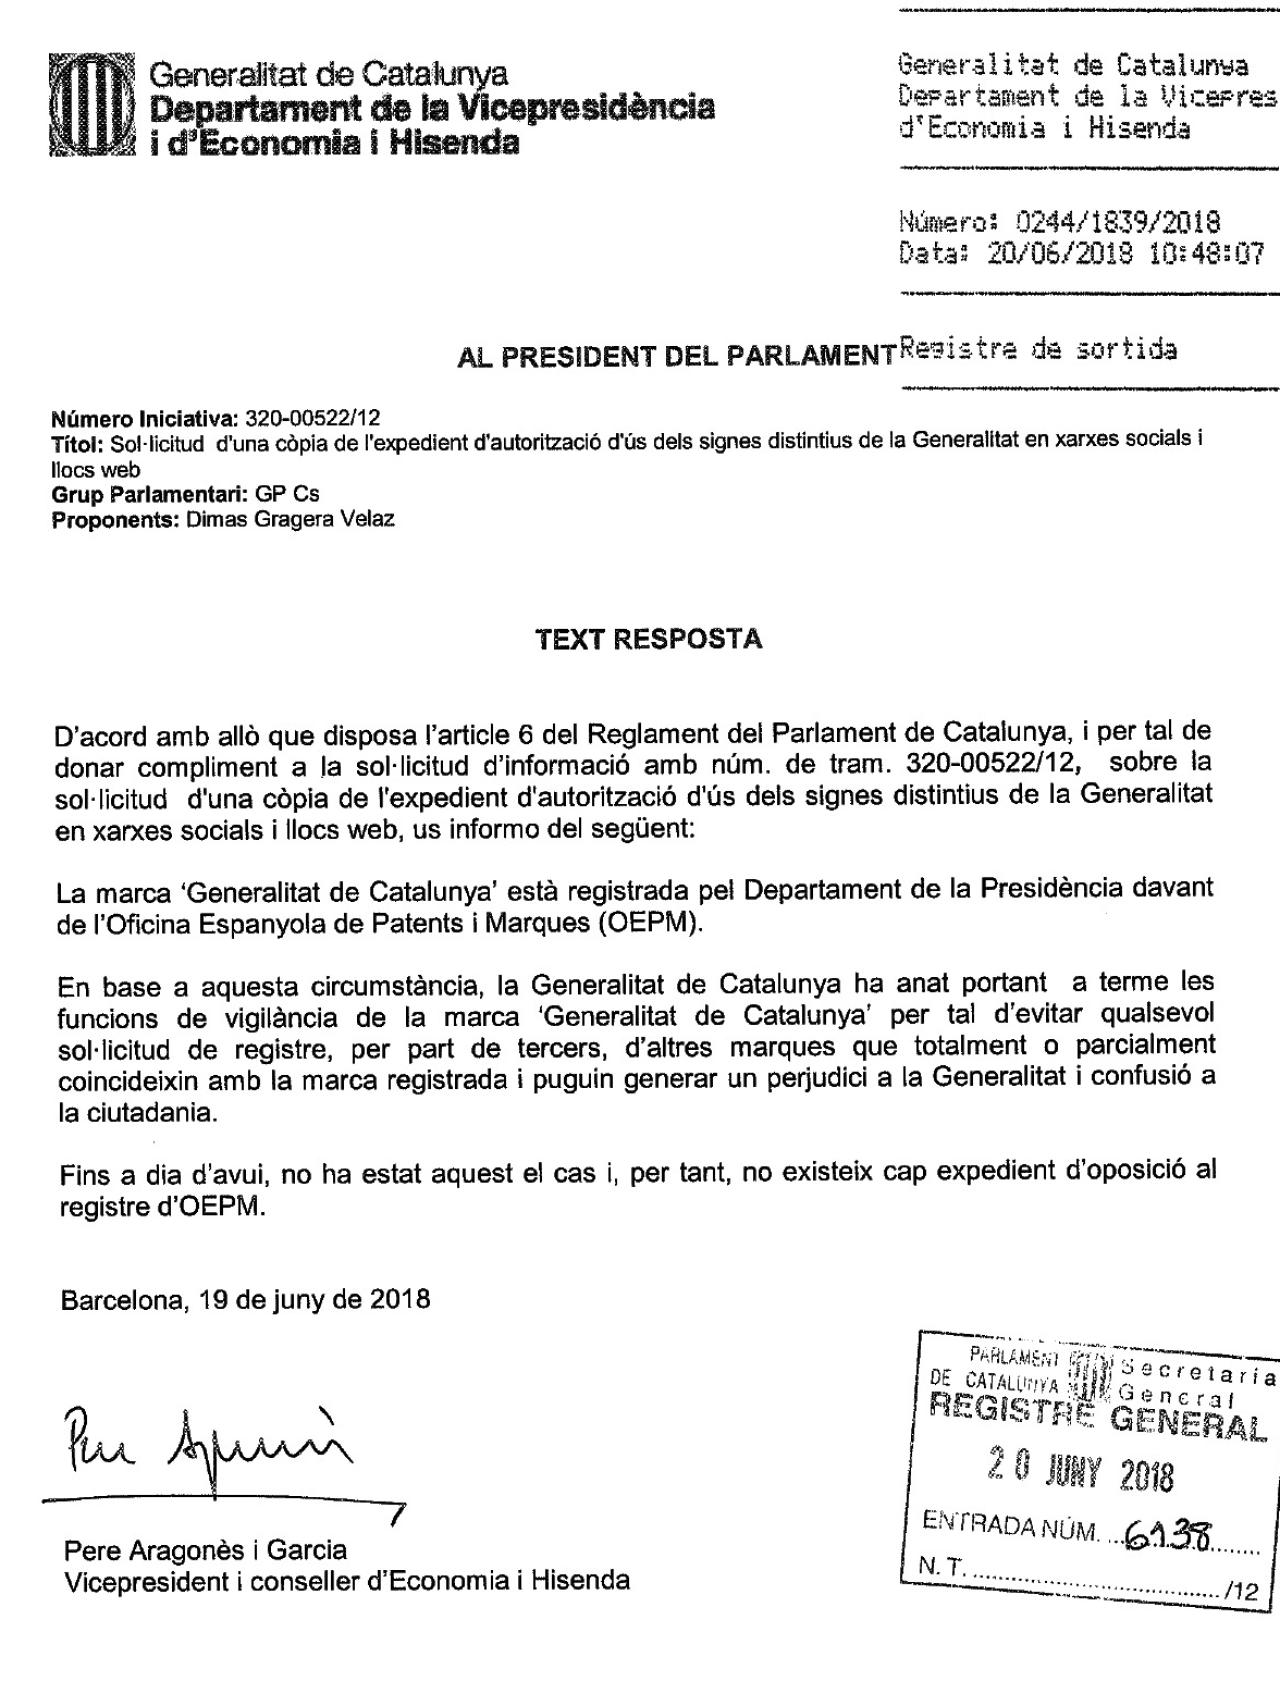 Texto de respuesta de Pere Aragonès a la reclamación de Ciudadanos por el uso no autorizado del logo de la Generalidad.